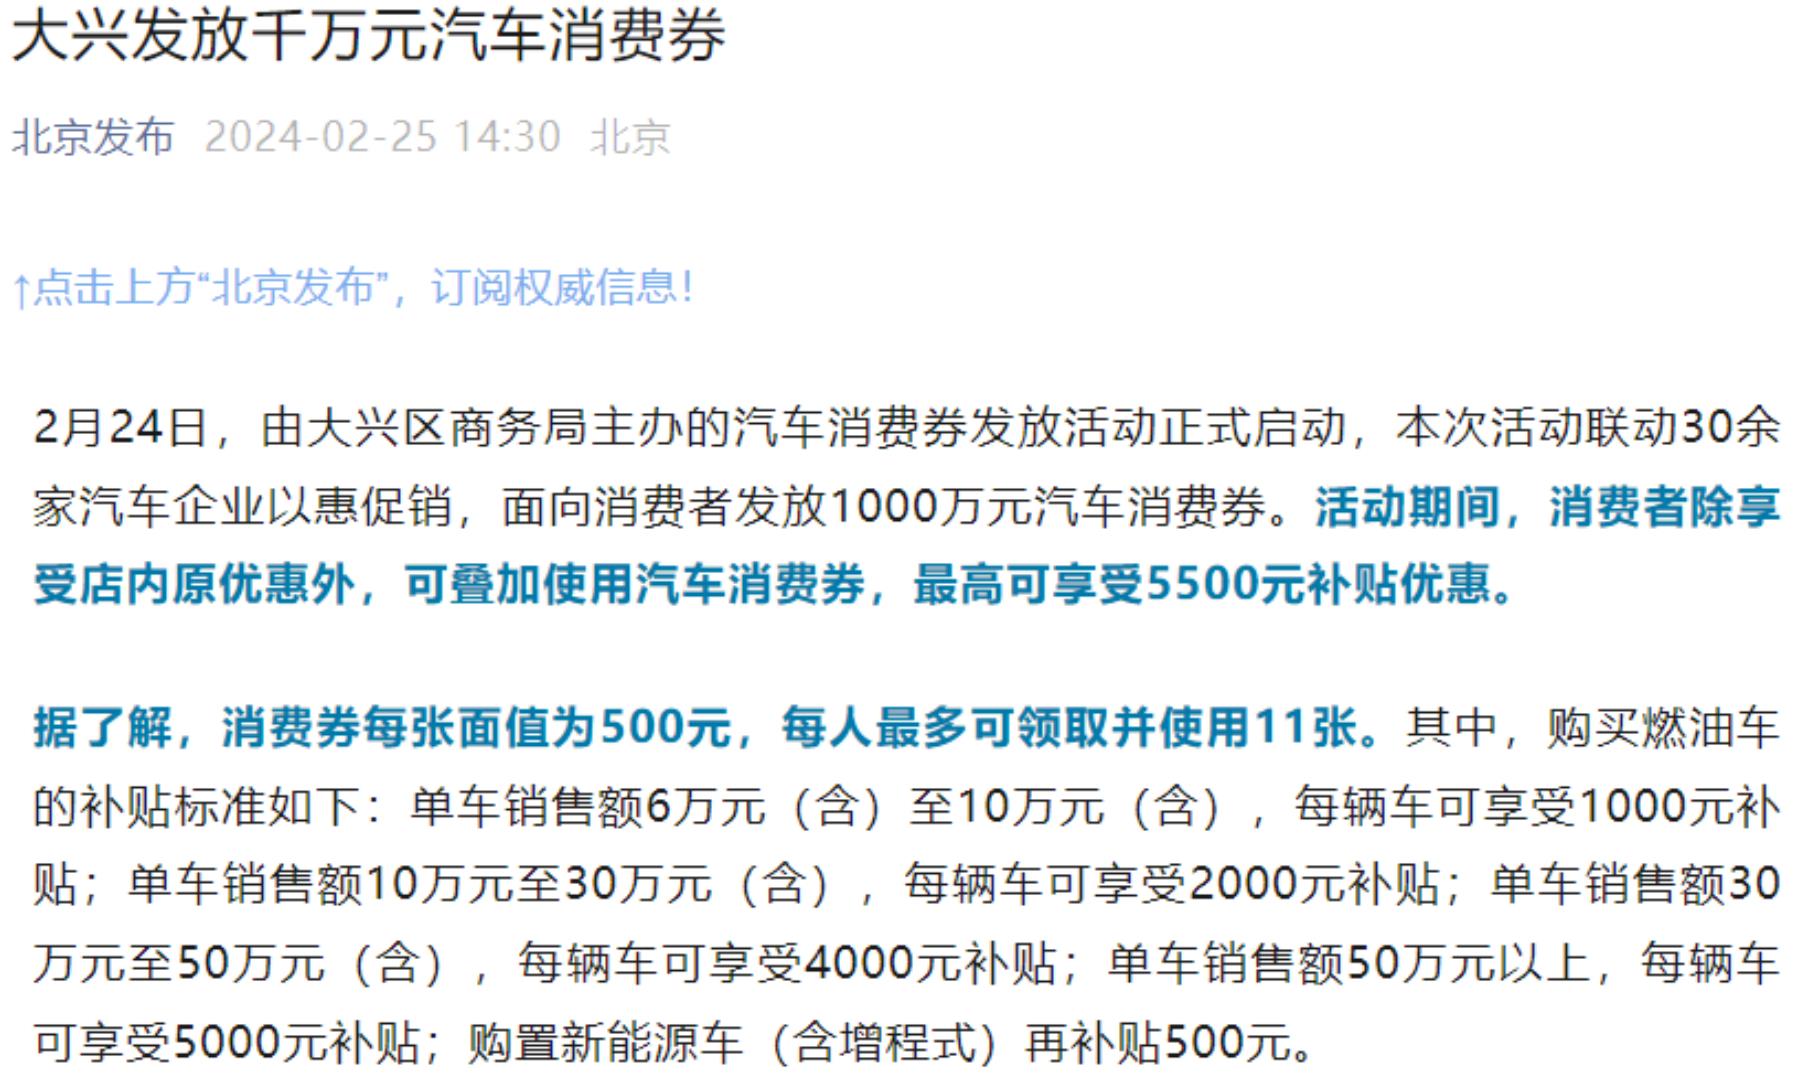 北京大兴区面向消费者发放1000万元汽车消费券